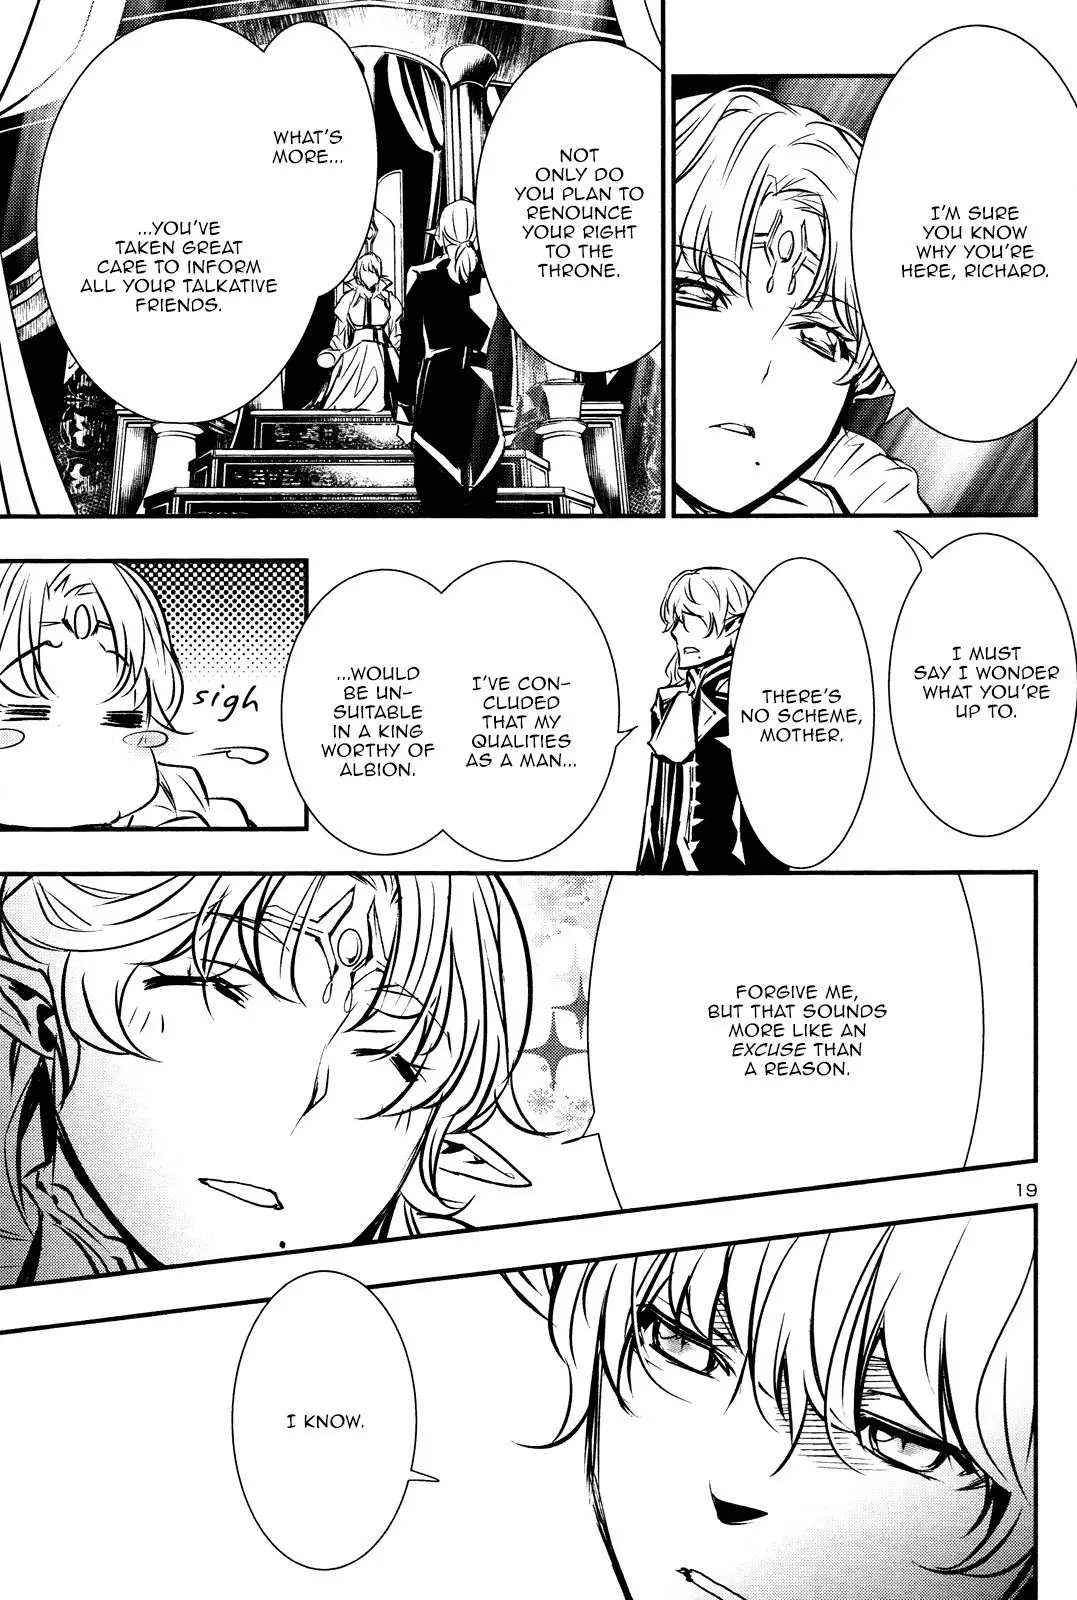 Shinju no Nectar - 38 page 19